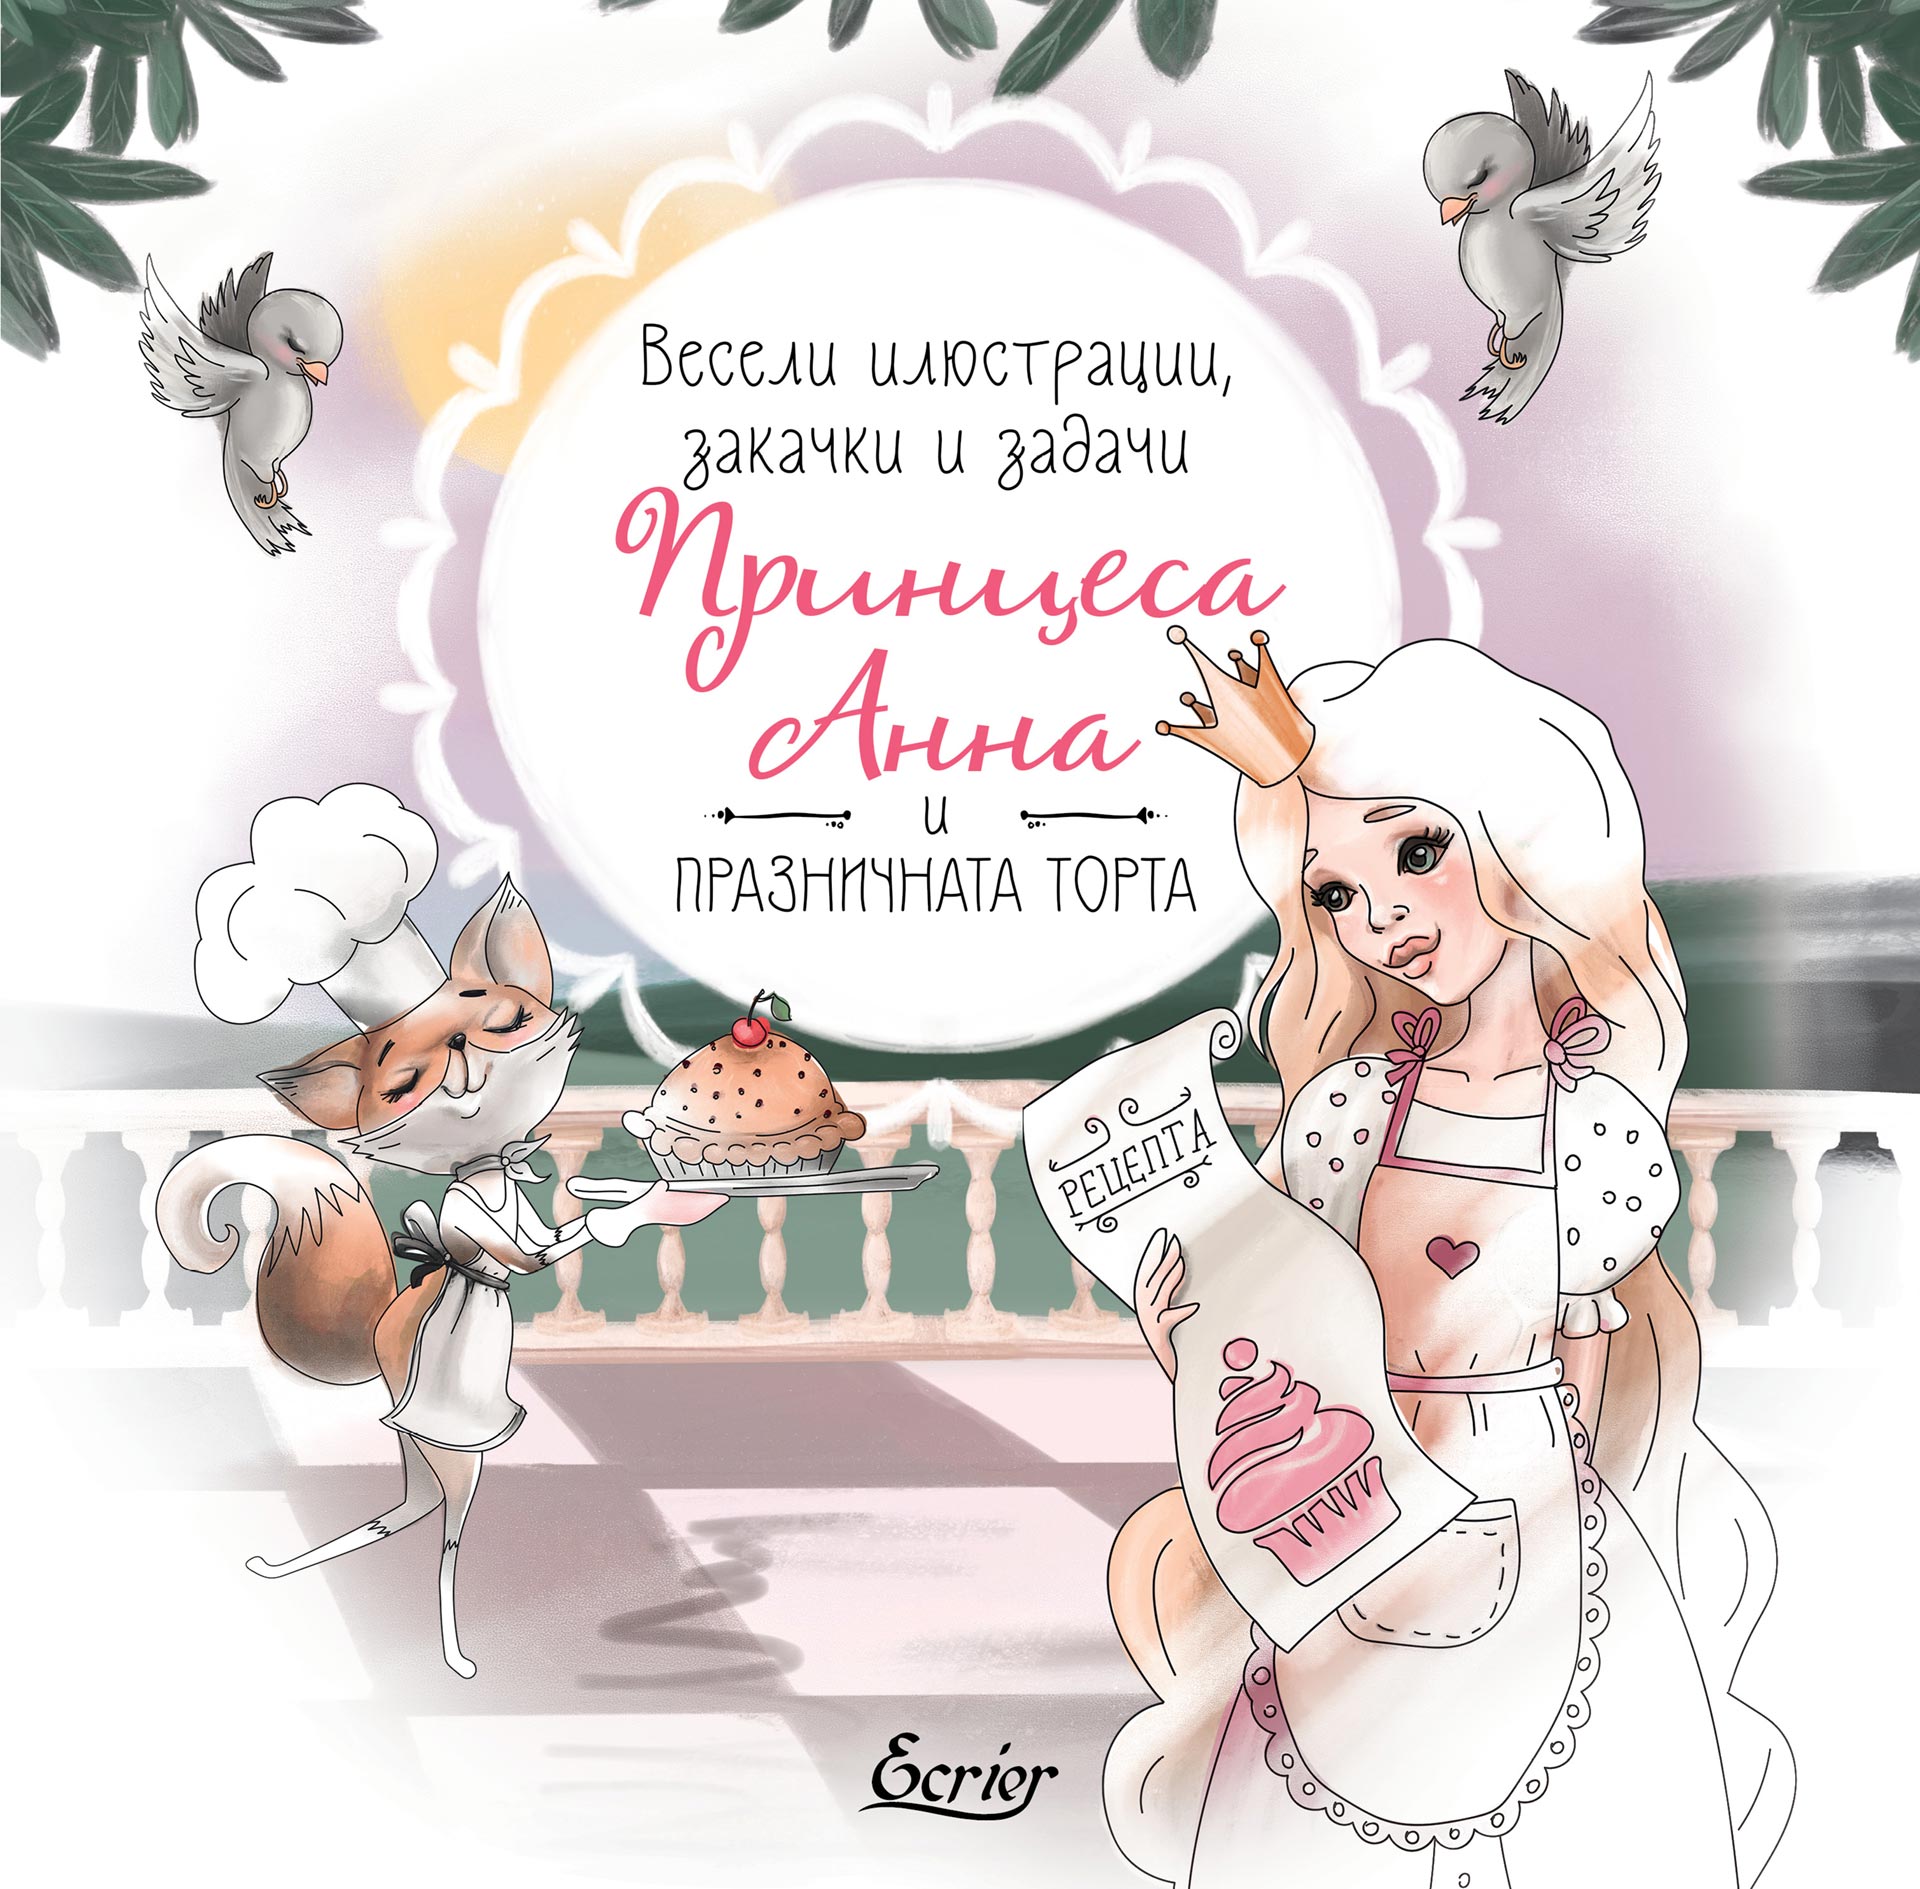 Анна Стефанова: "Принцеса Анна и празничната торта"